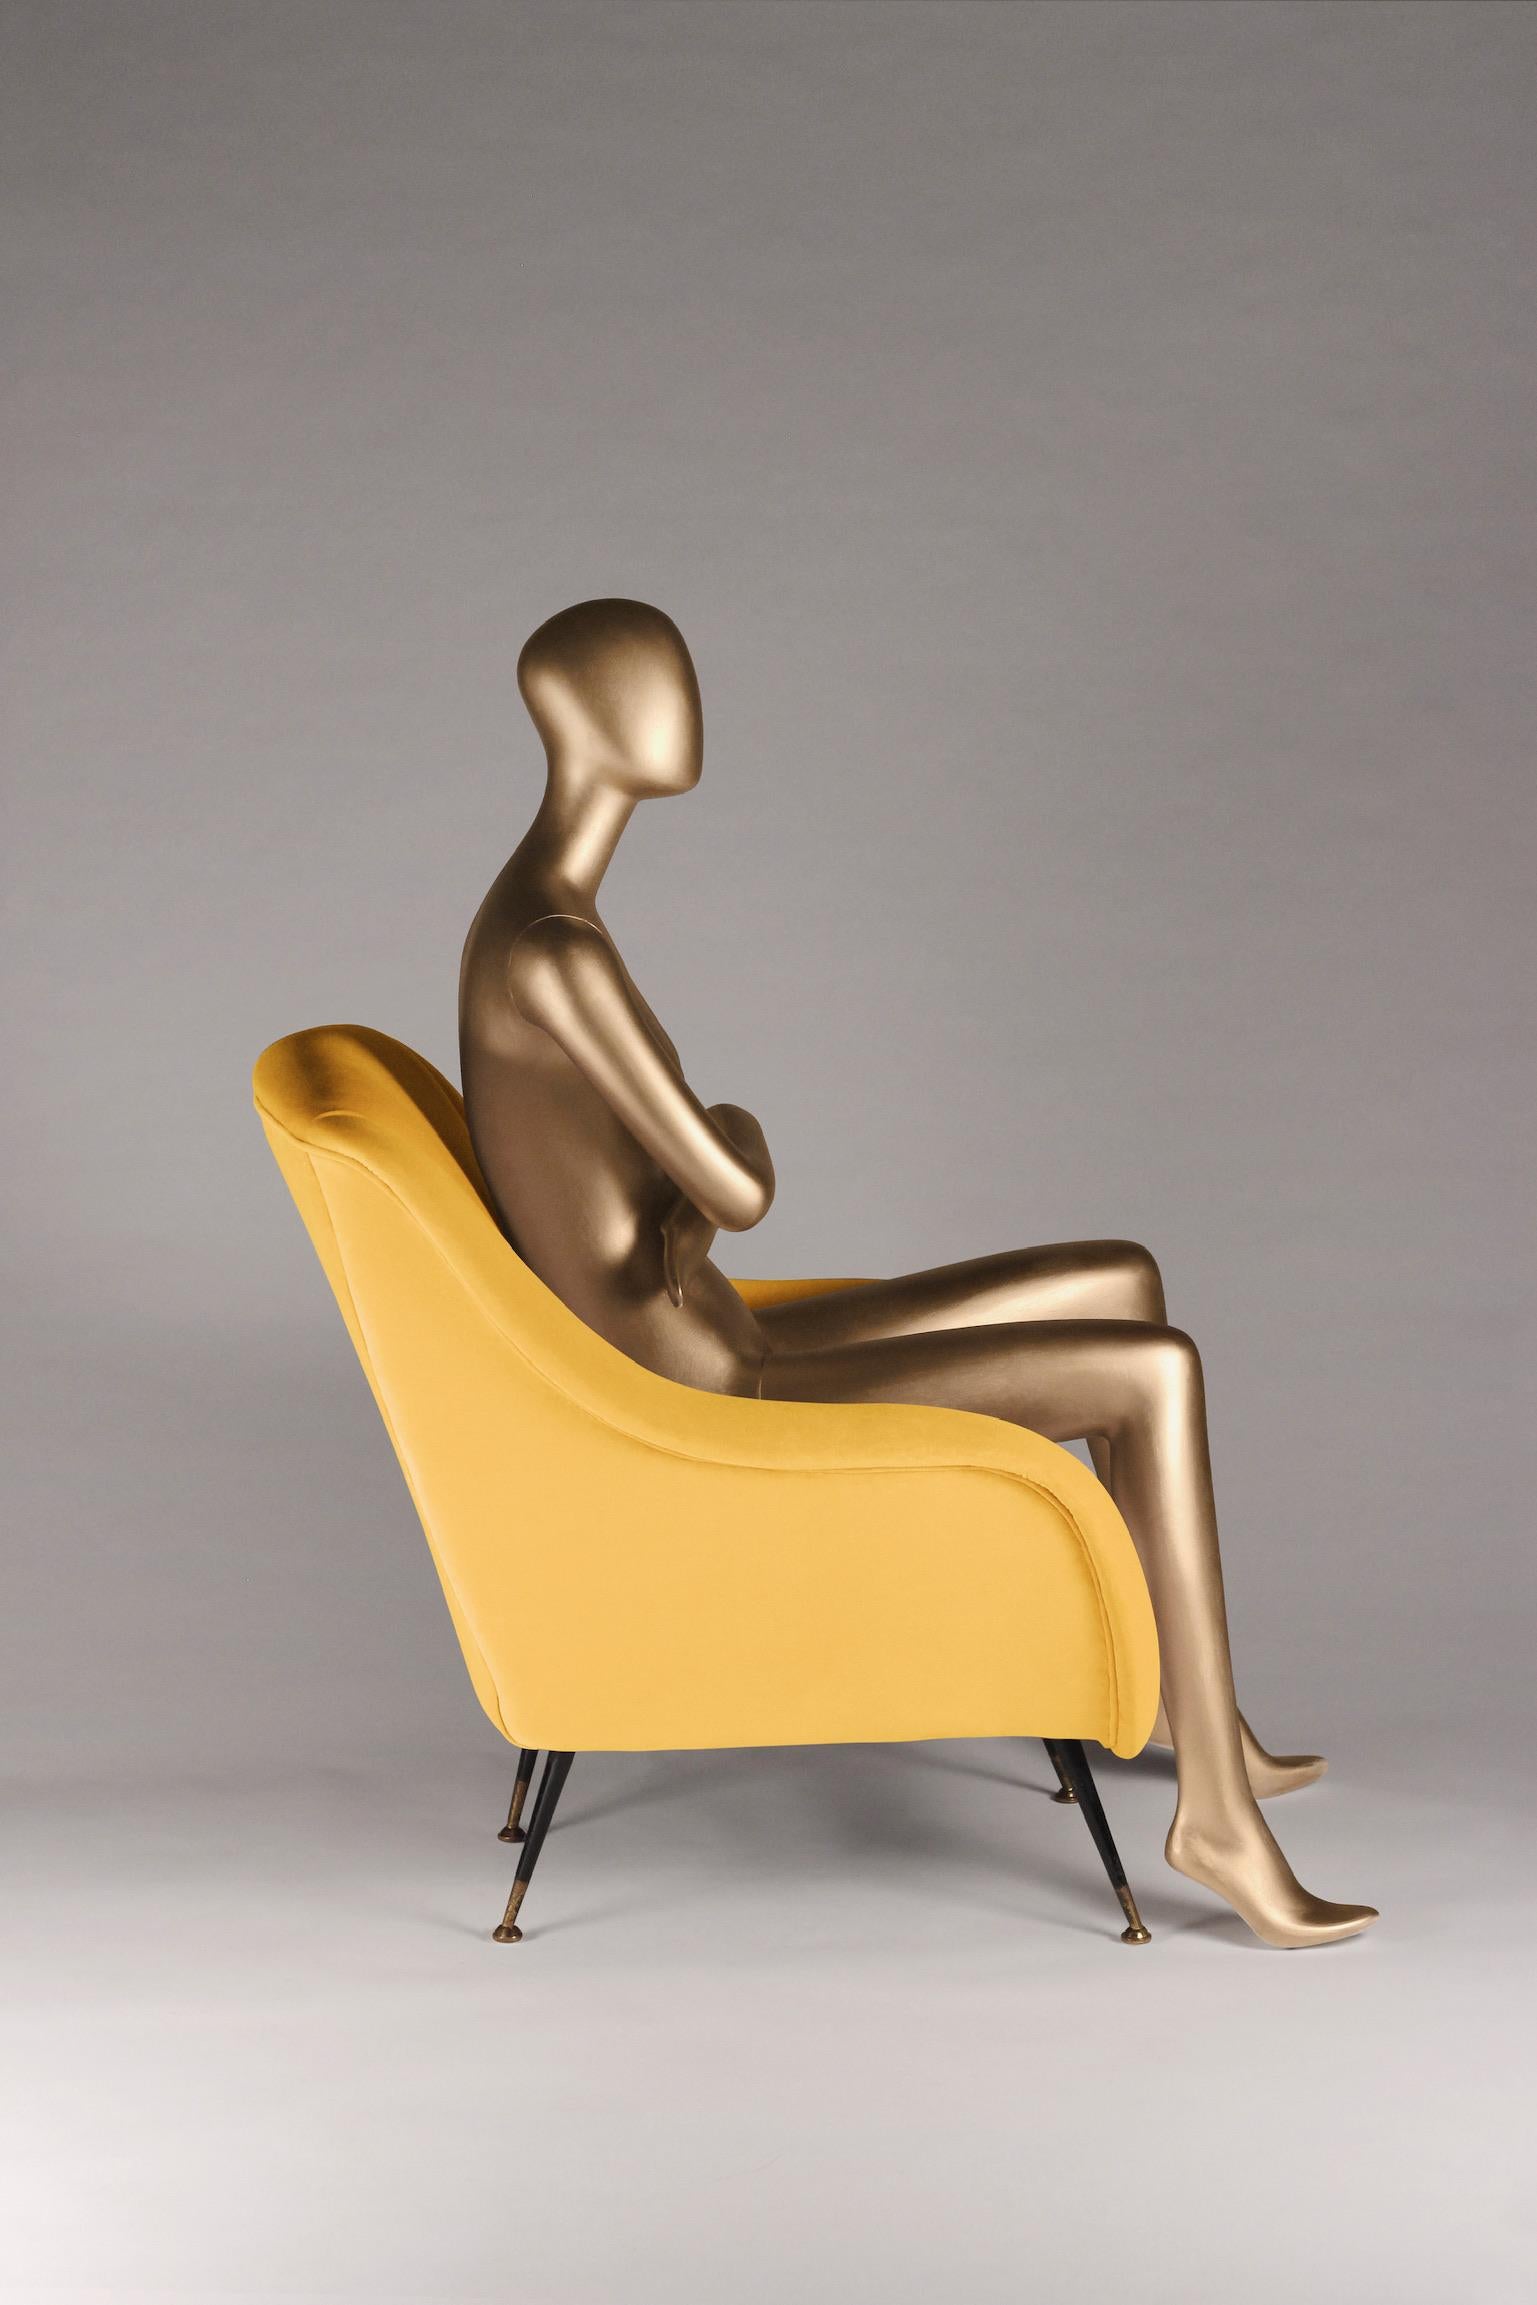 Sophia s'est inspirée du design italien des années 1950 et a été créée par des artisans anglais pour le 21e siècle. Nous avons mis au point une chaise longue avec la possibilité d'en produire n'importe quel nombre selon vos spécifications de tissu.